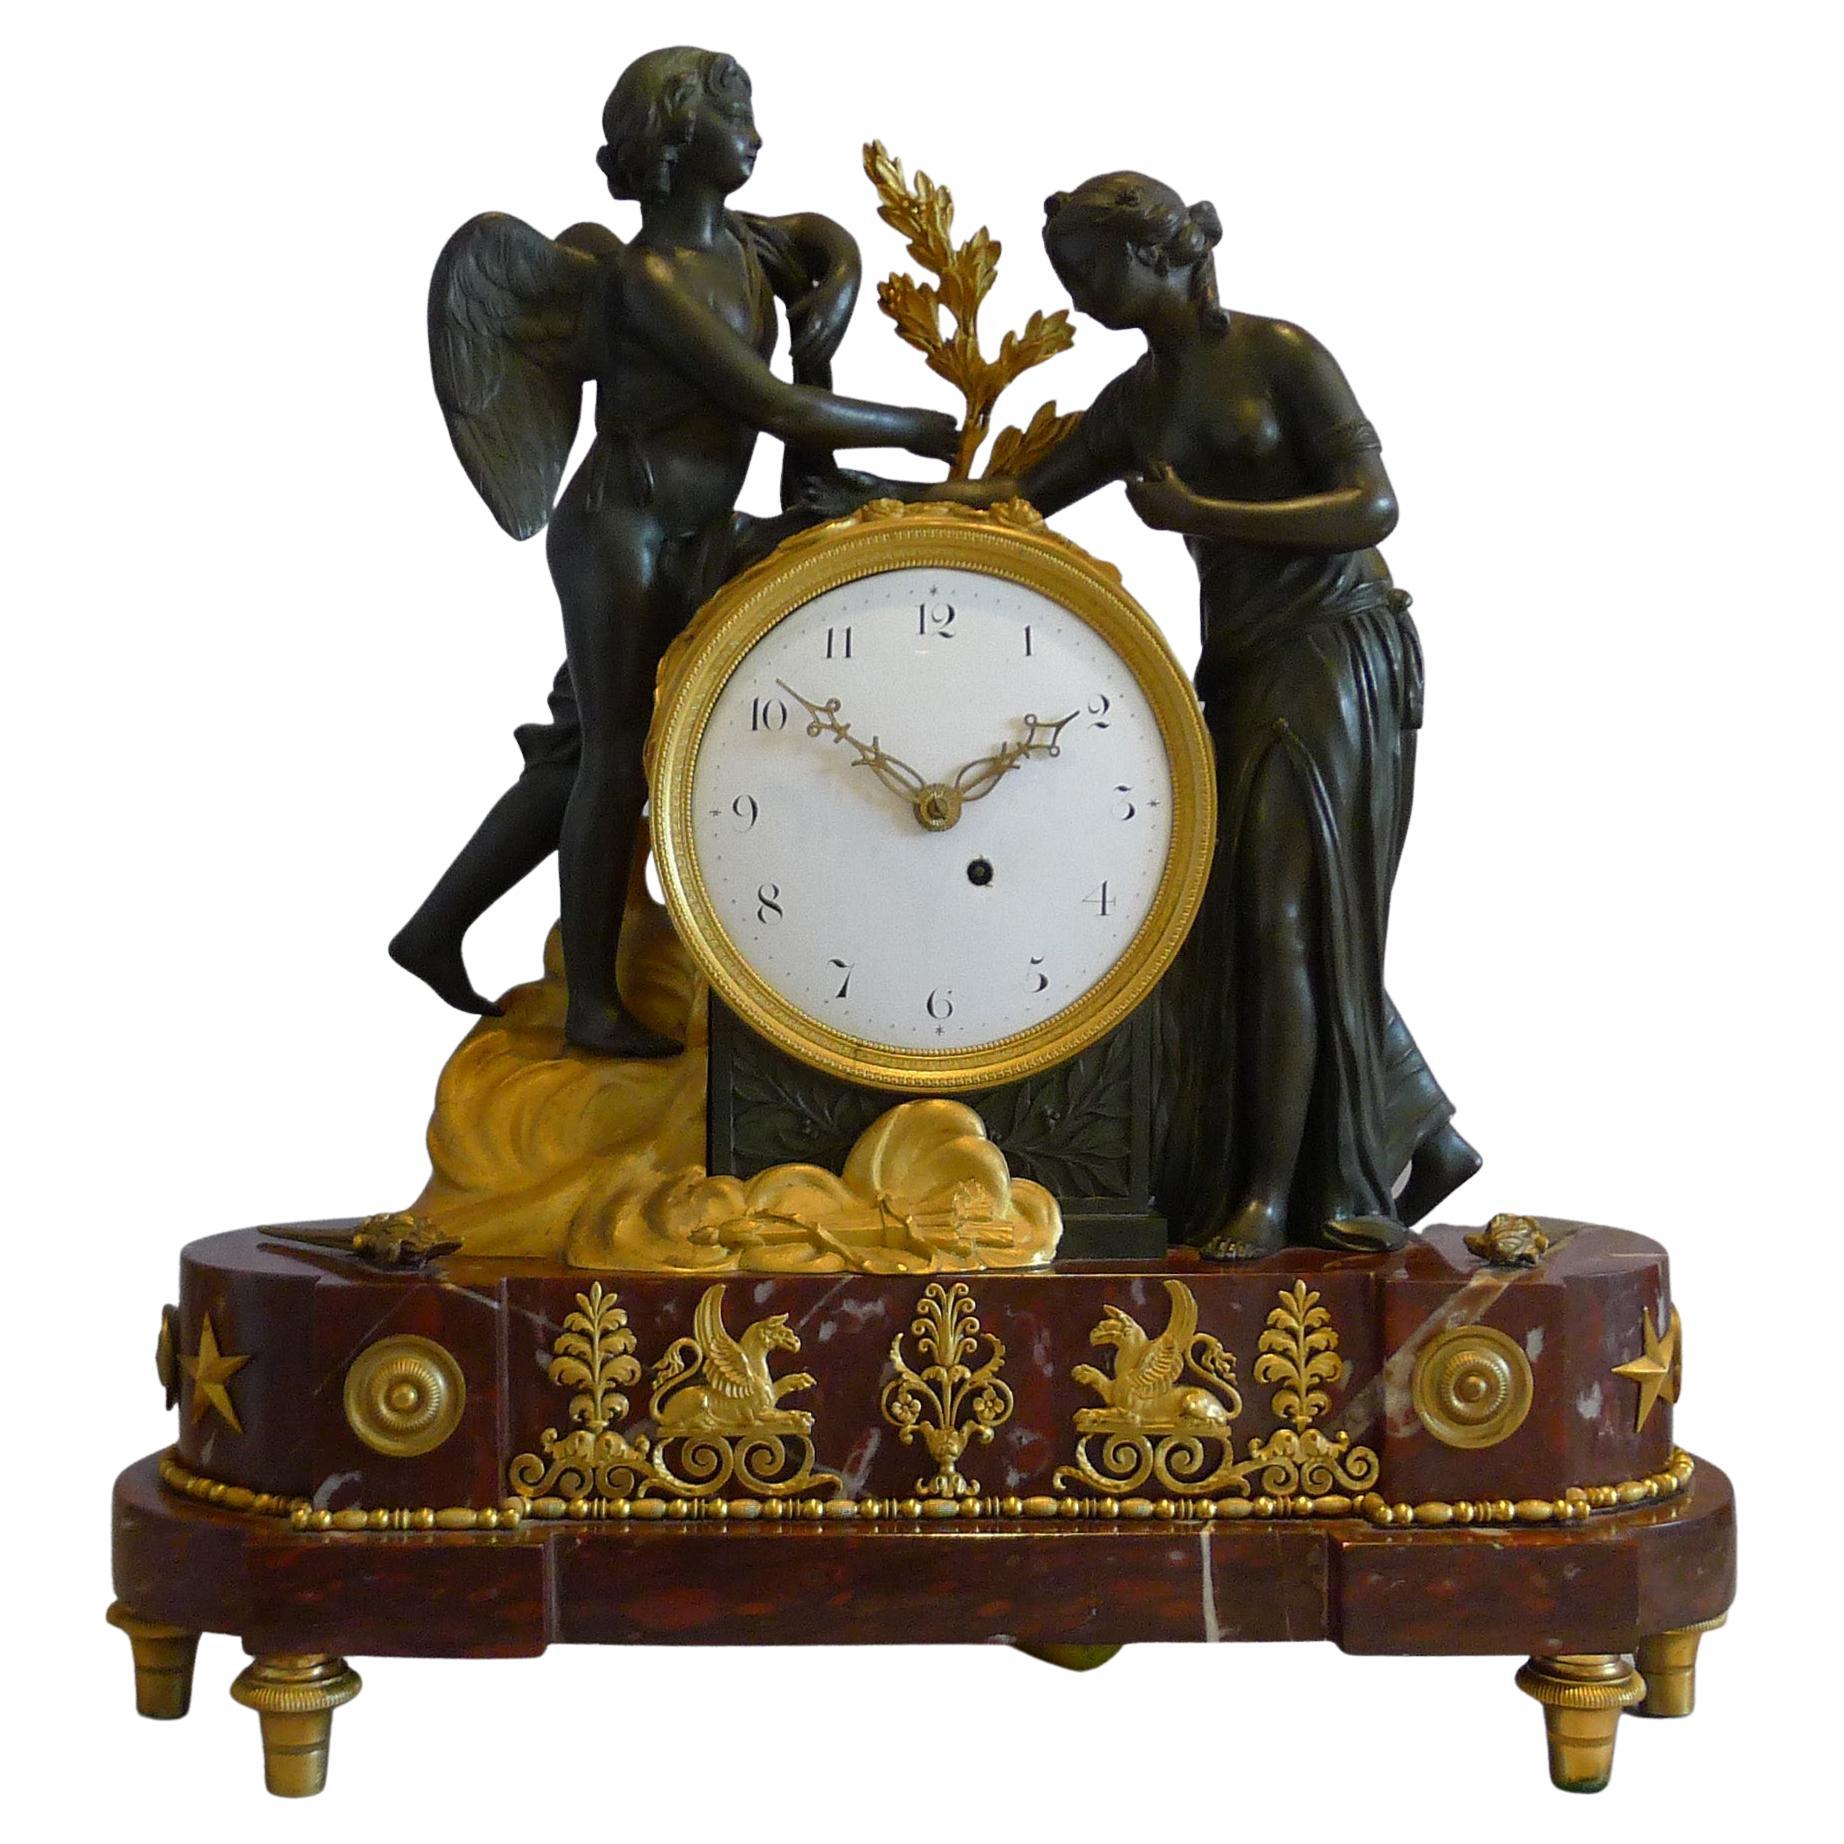 Pendule de cheminée néoclassique anglaise Regency de style néo-classique représentant Psyché et Cupidon